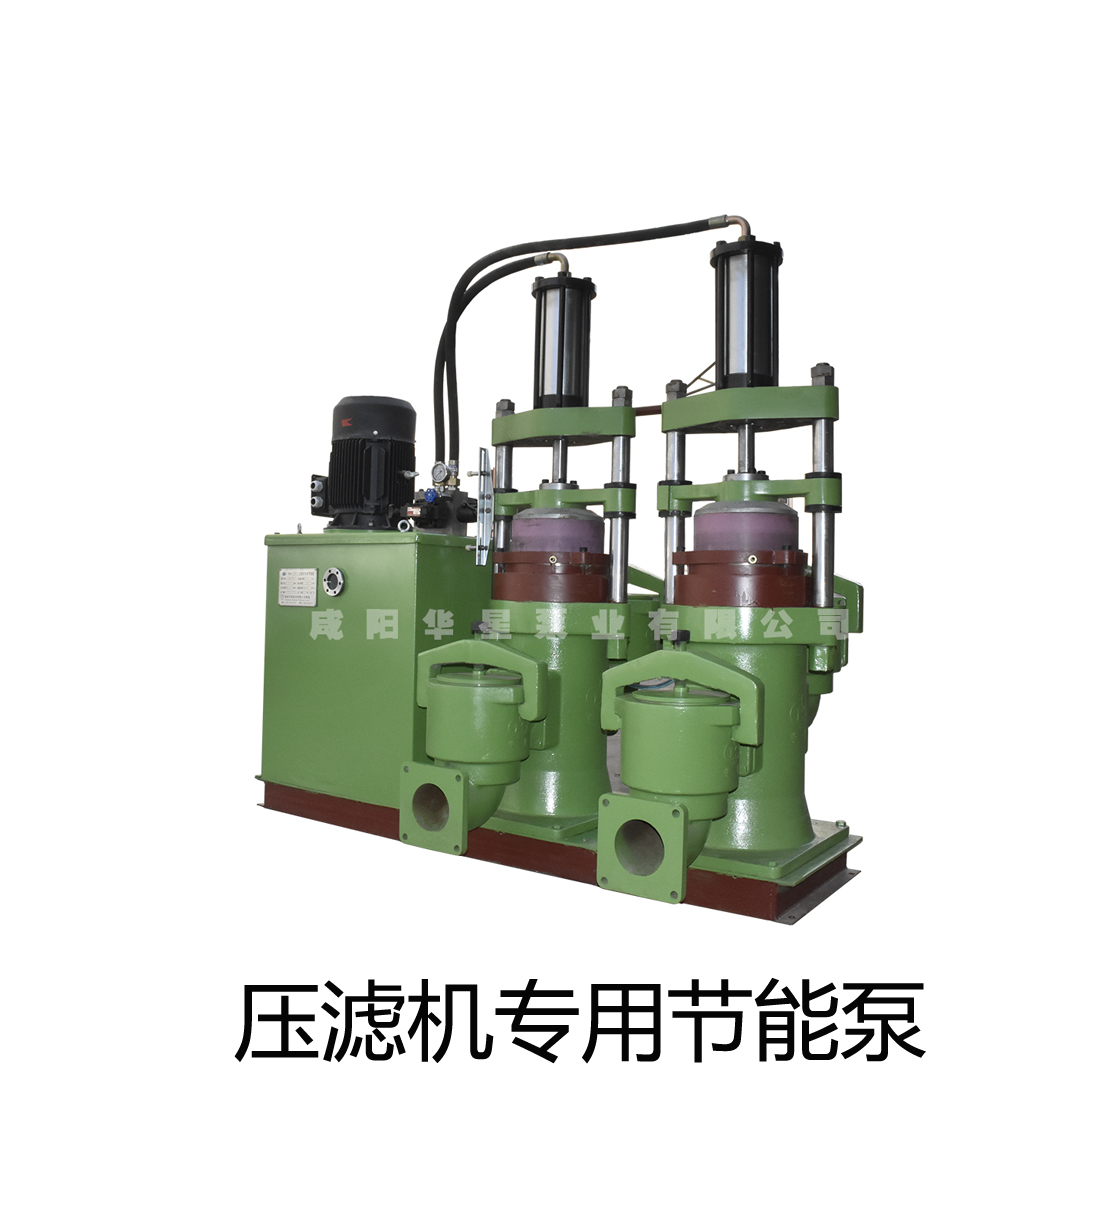 壓濾機進料泵廠家_料漿泵_壓濾機專用泵華星壓濾機入料泵